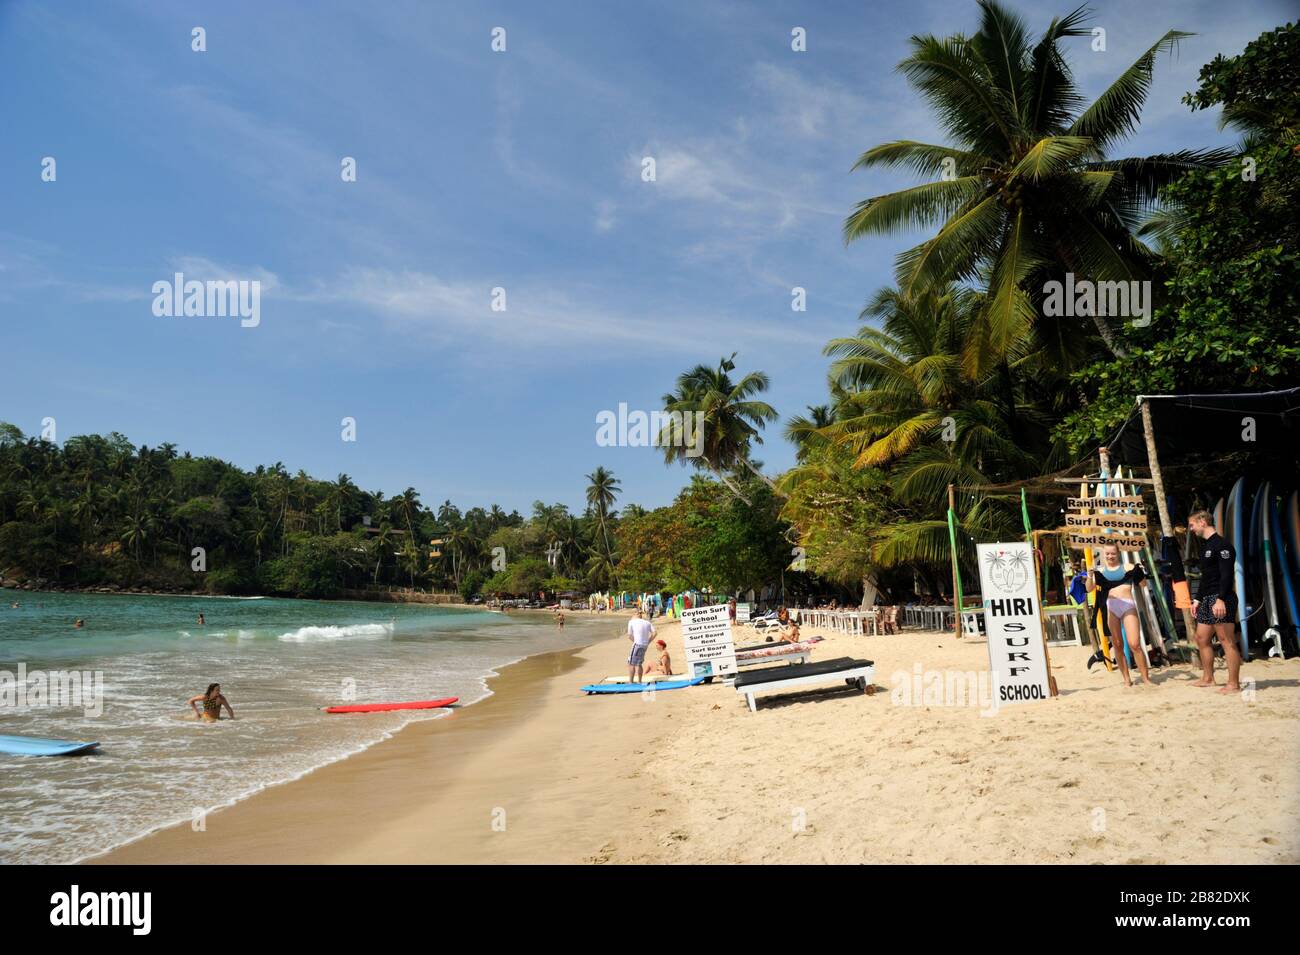 Sri Lanka, Hiriketiya beach Stock Photo